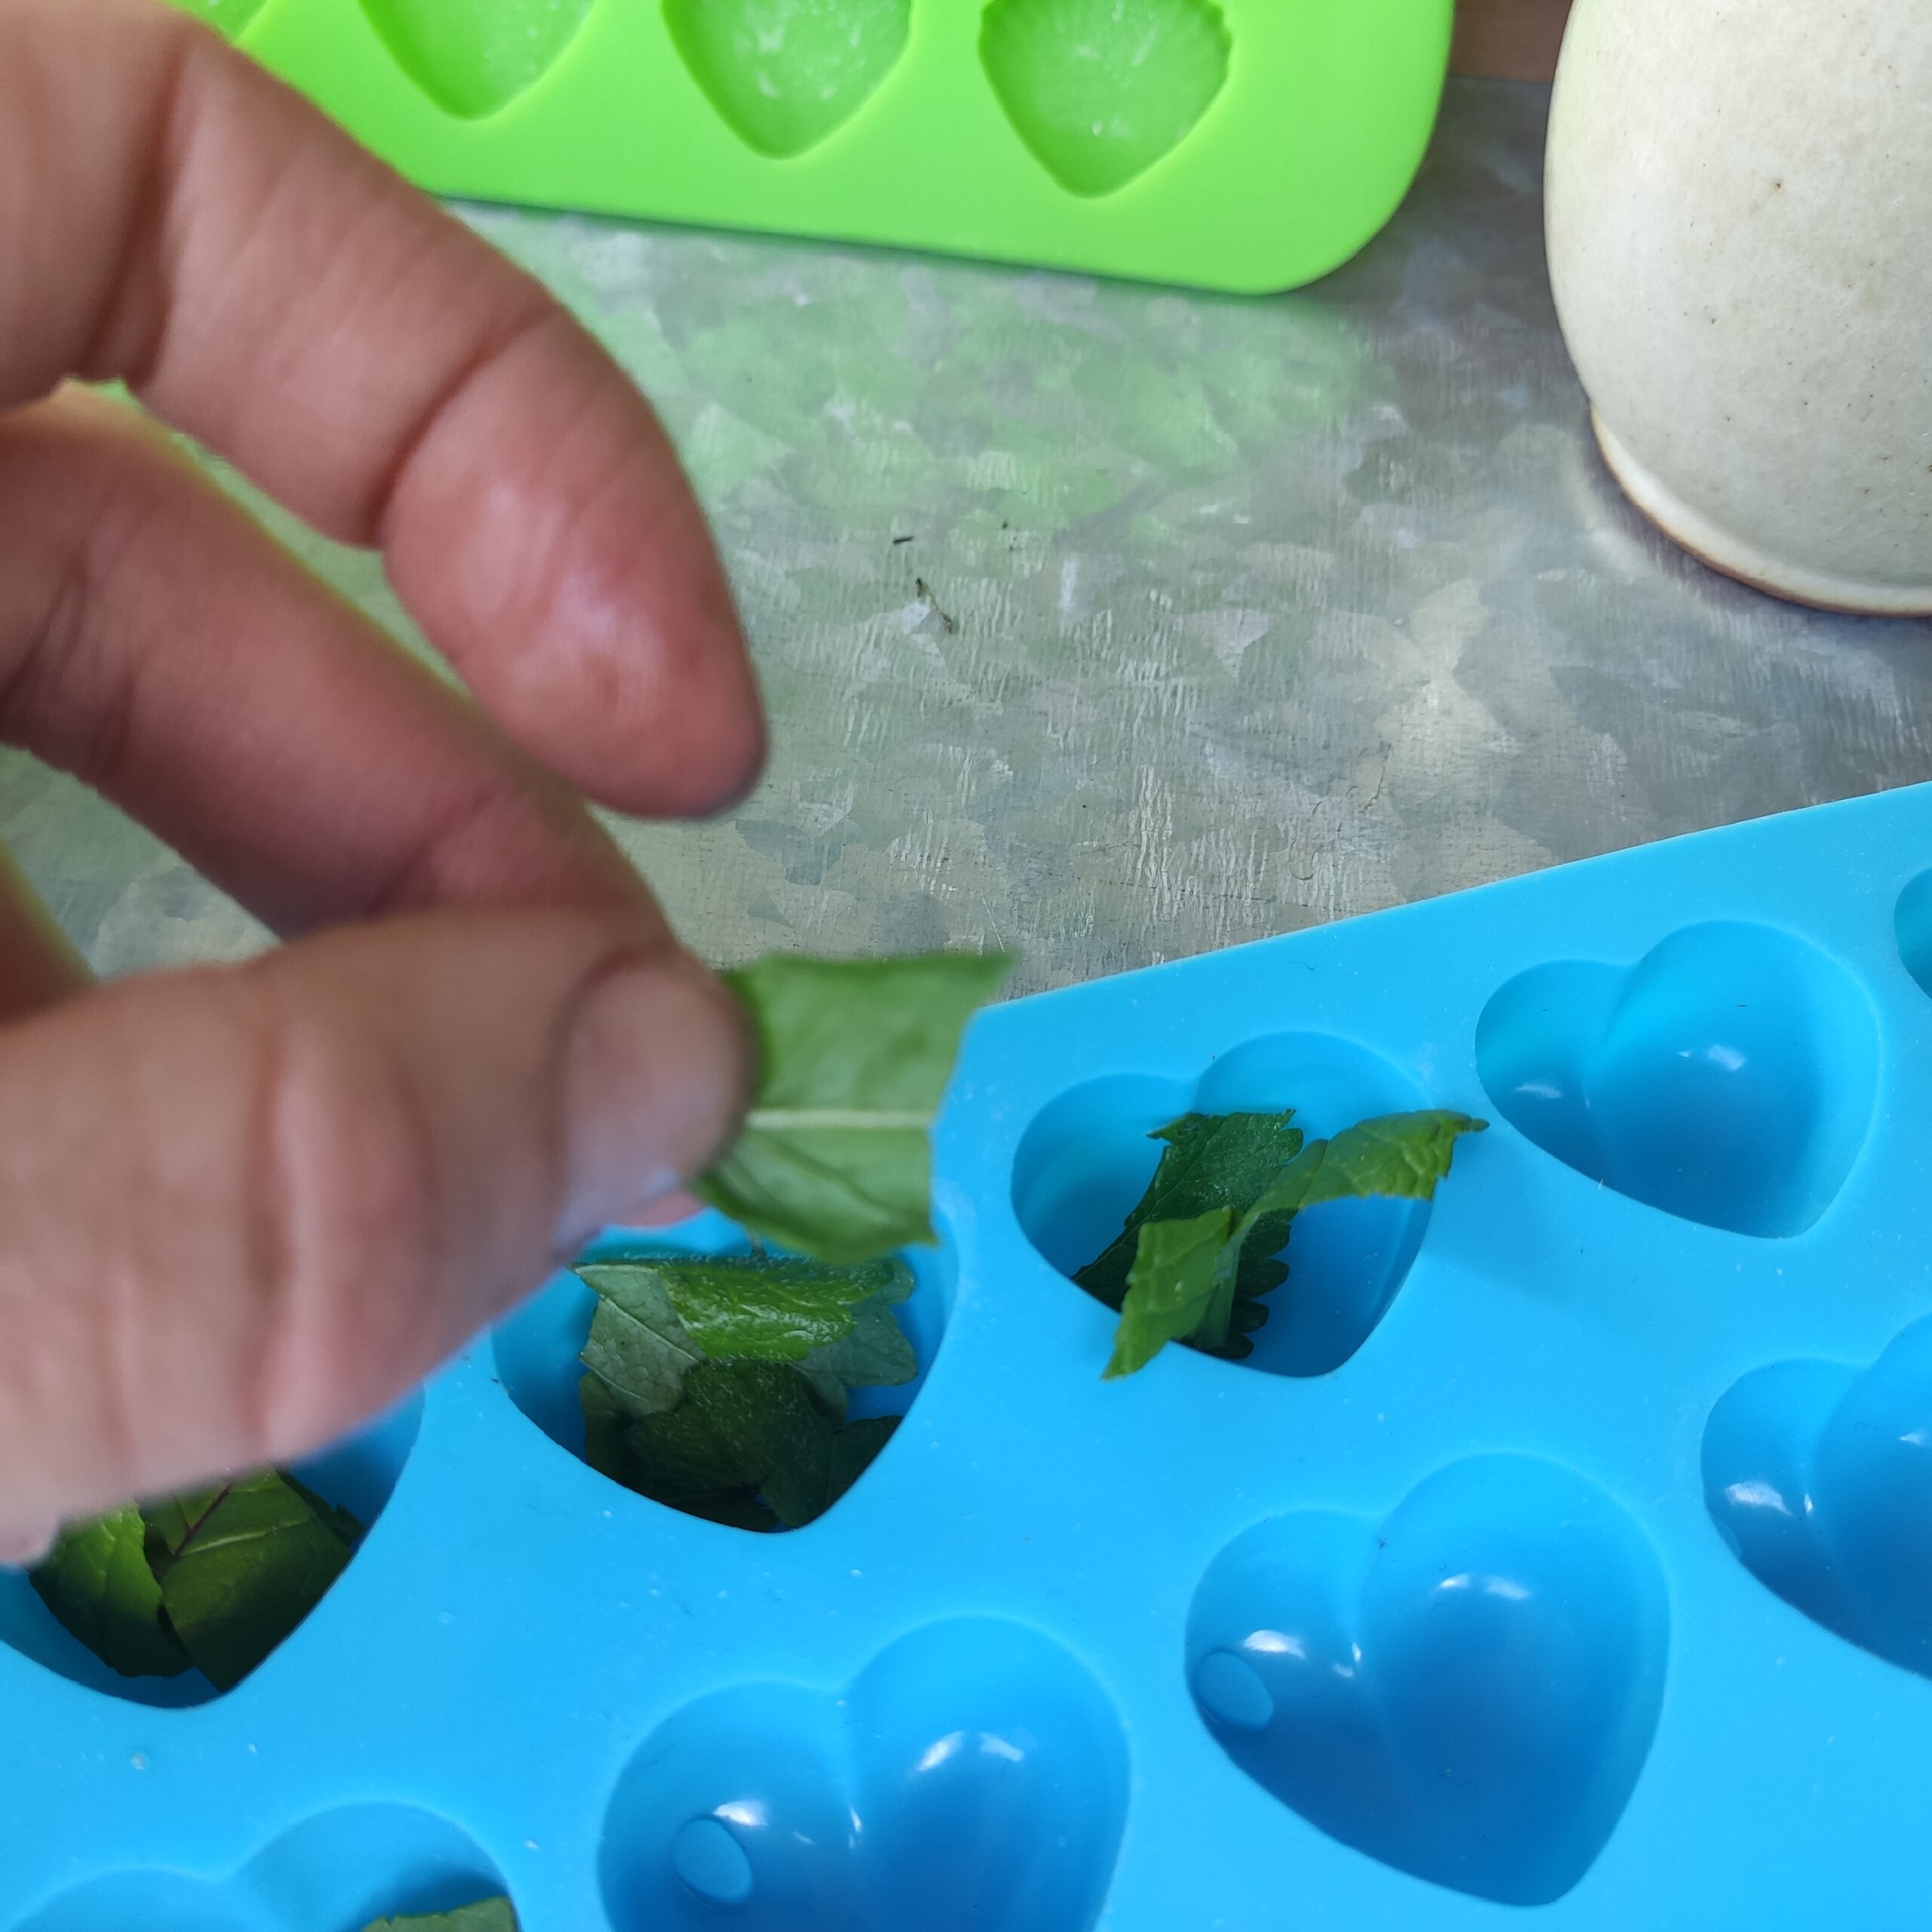 Bild zum Schritt 2 für das Bastel- und DIY-Abenteuer für Kinder: 'Als nächstes zupft ihr eure Kräuterblätter mit den Fingern klein,...'